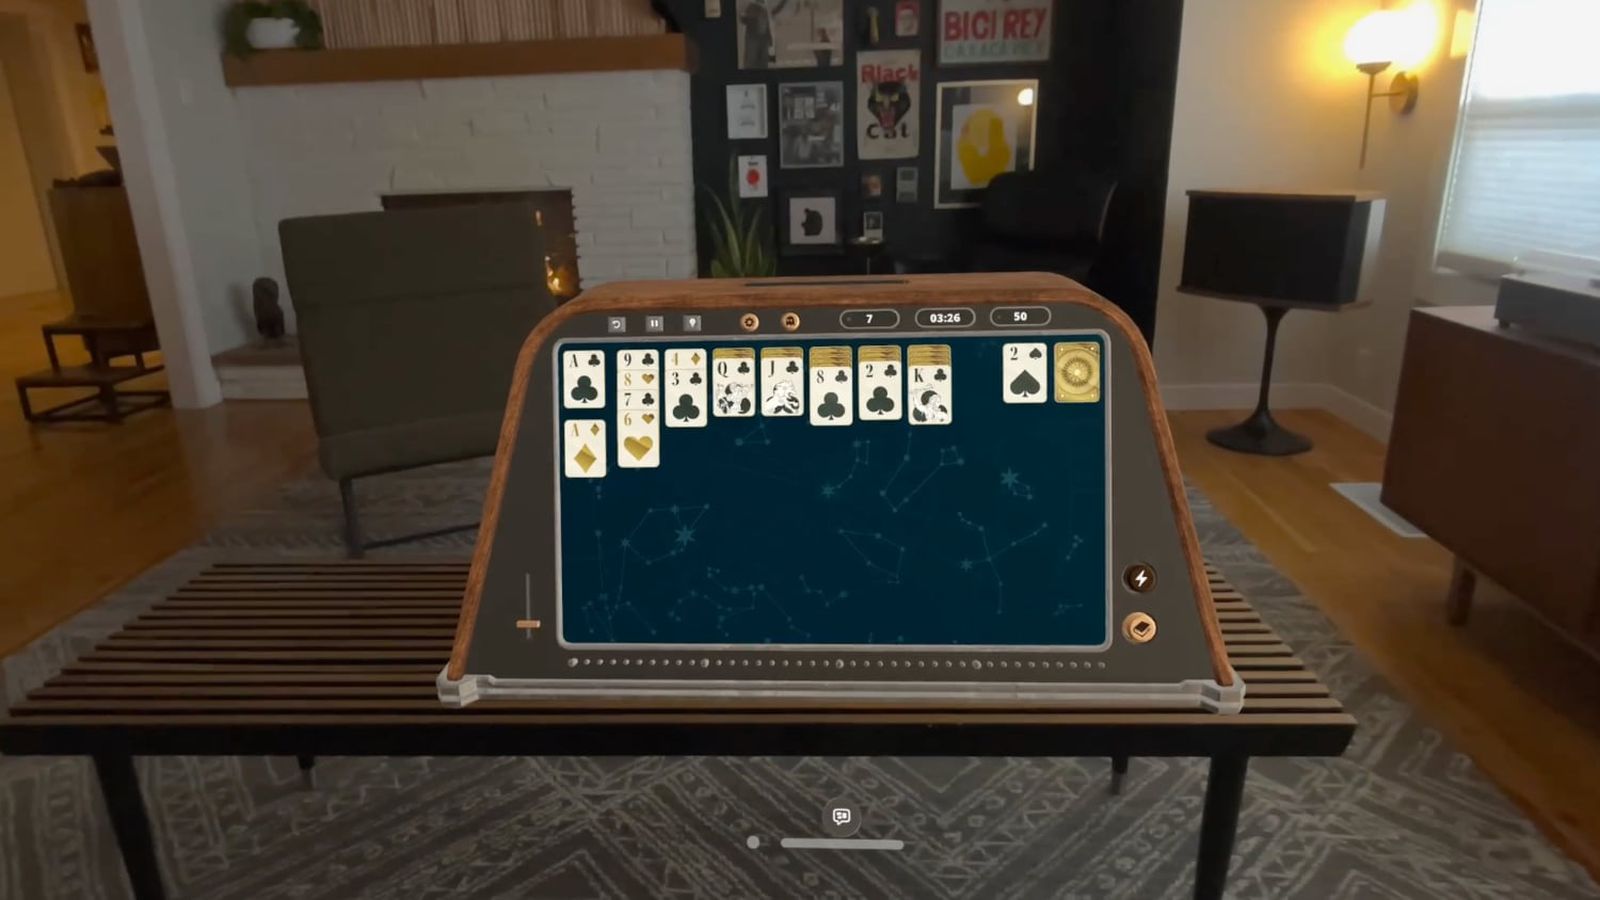 De iPhoneIslam.com, un juego de solitario virtual que se juega en un dispositivo de realidad aumentada en una sala de estar modernamente decorada durante la semana del 19 al 25 de abril.